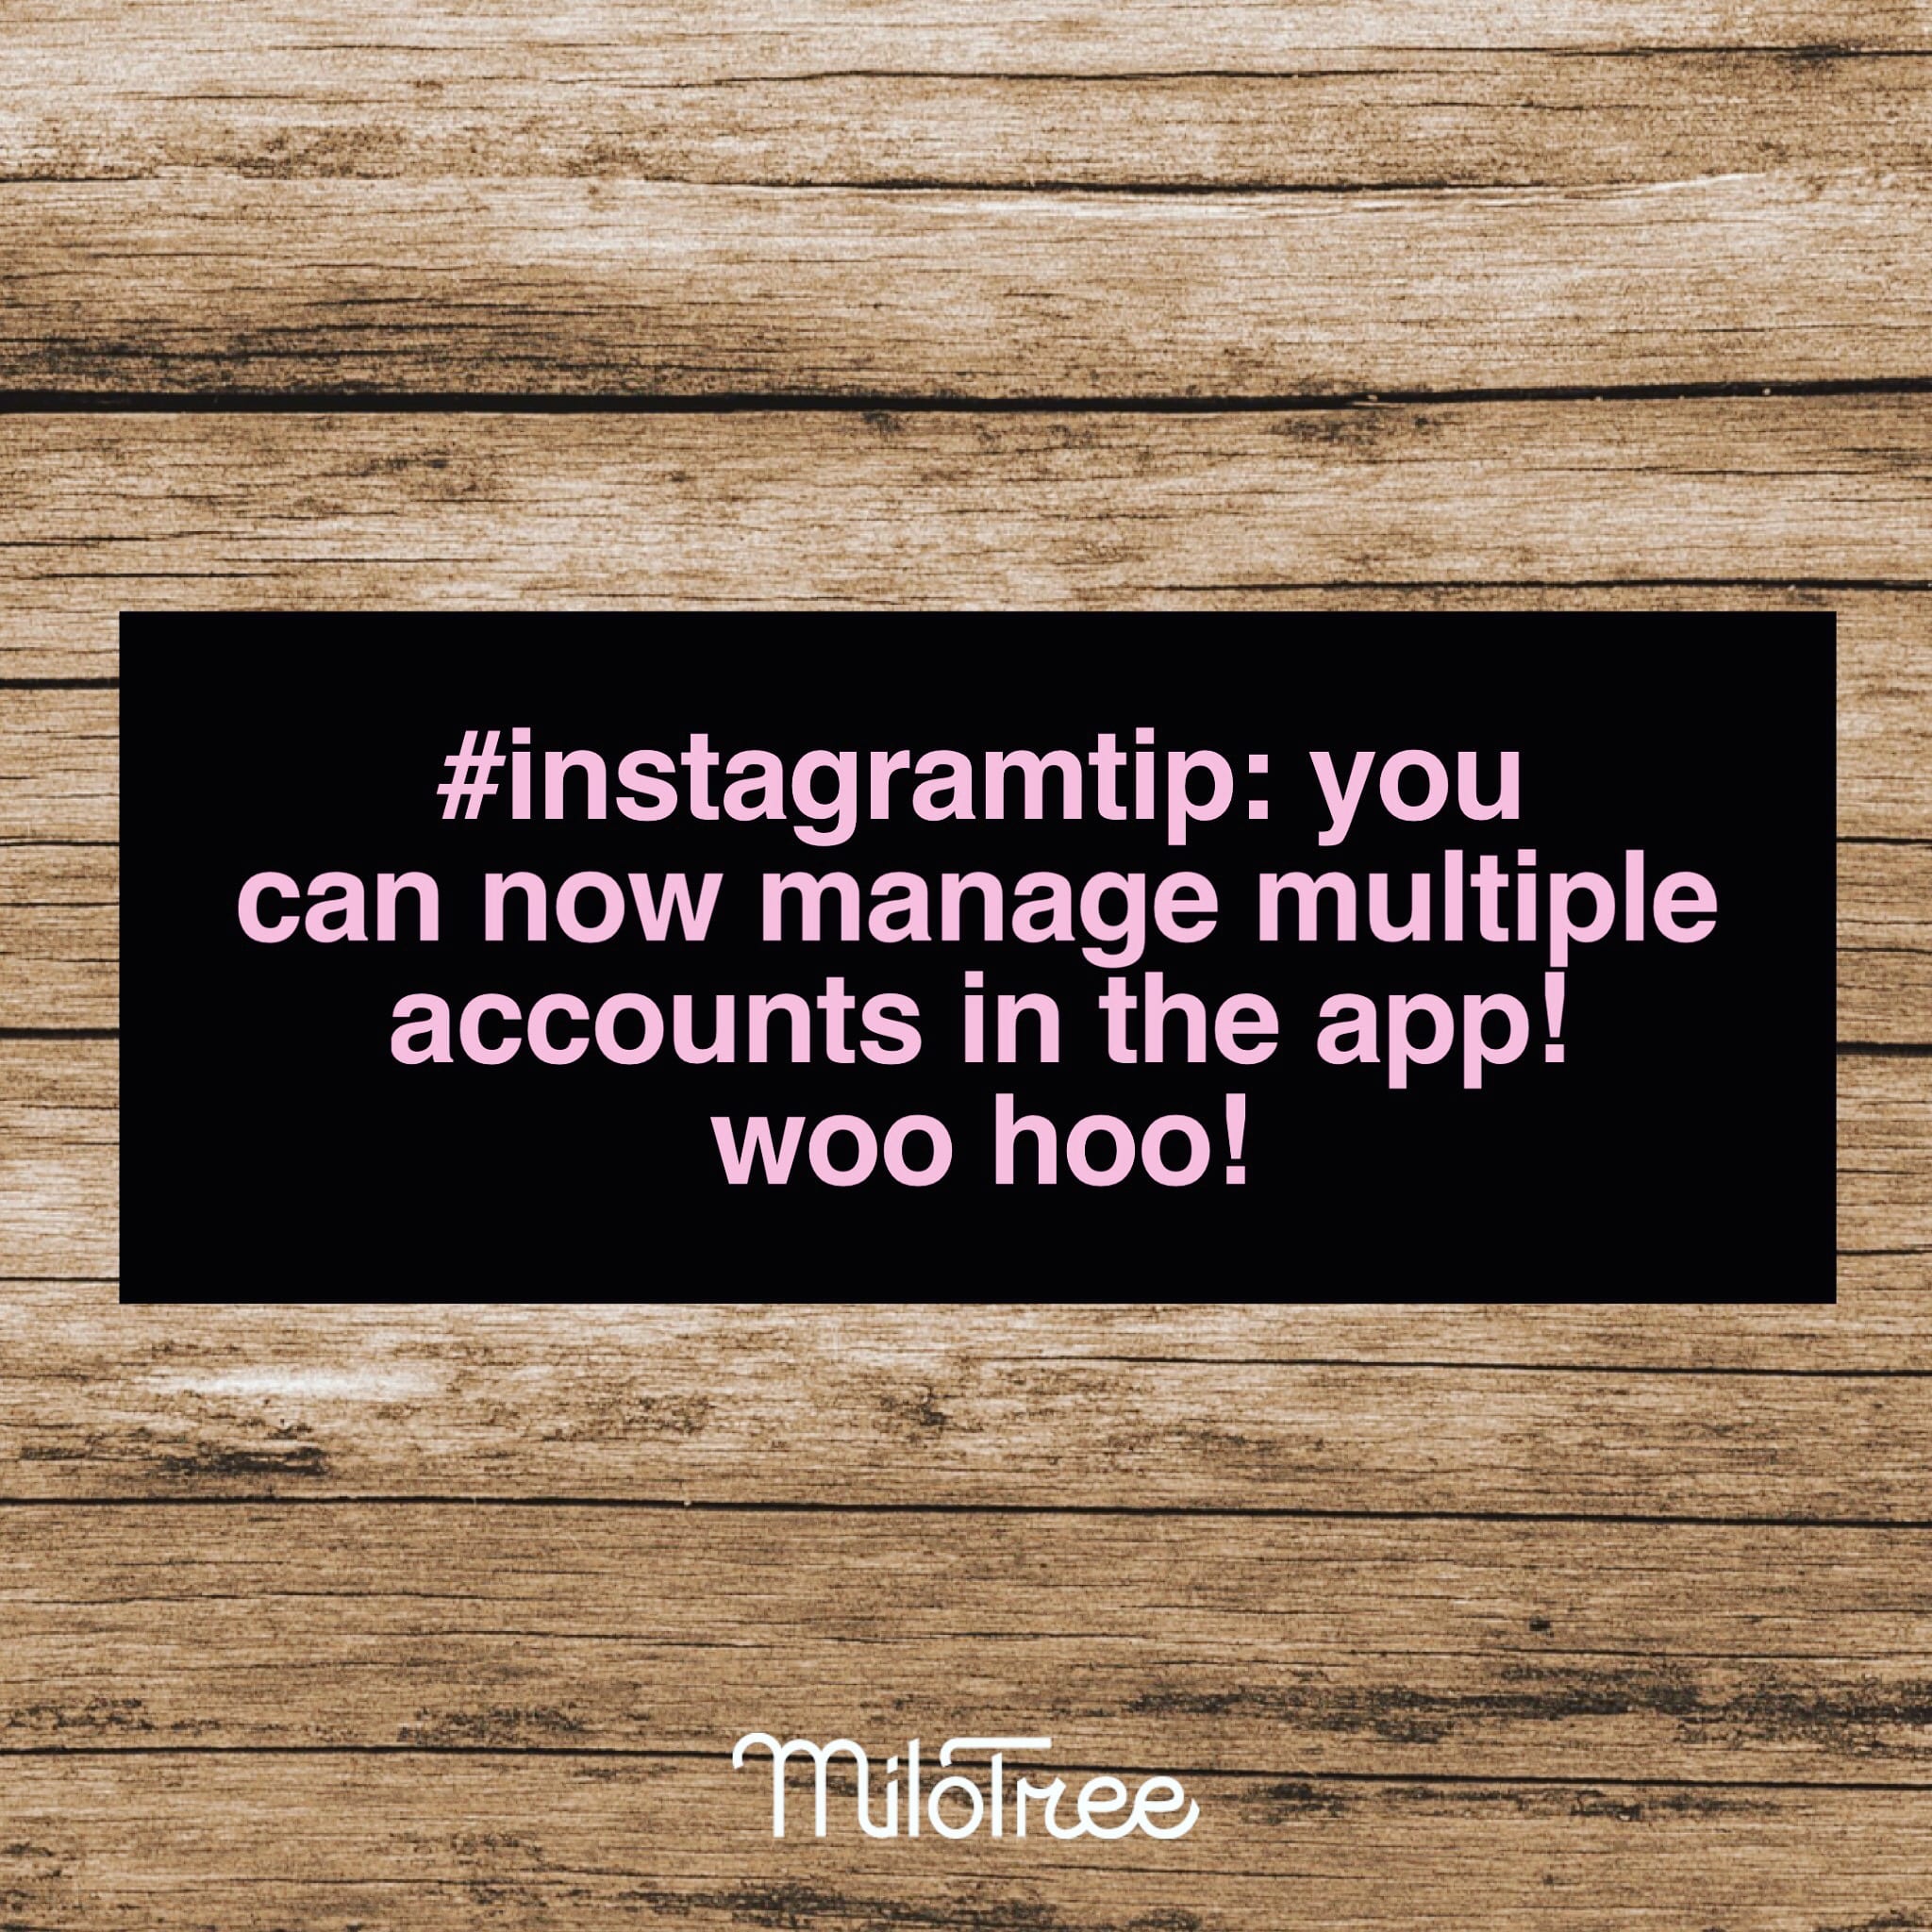 Switch Between Multiple Instagram Accounts In The App